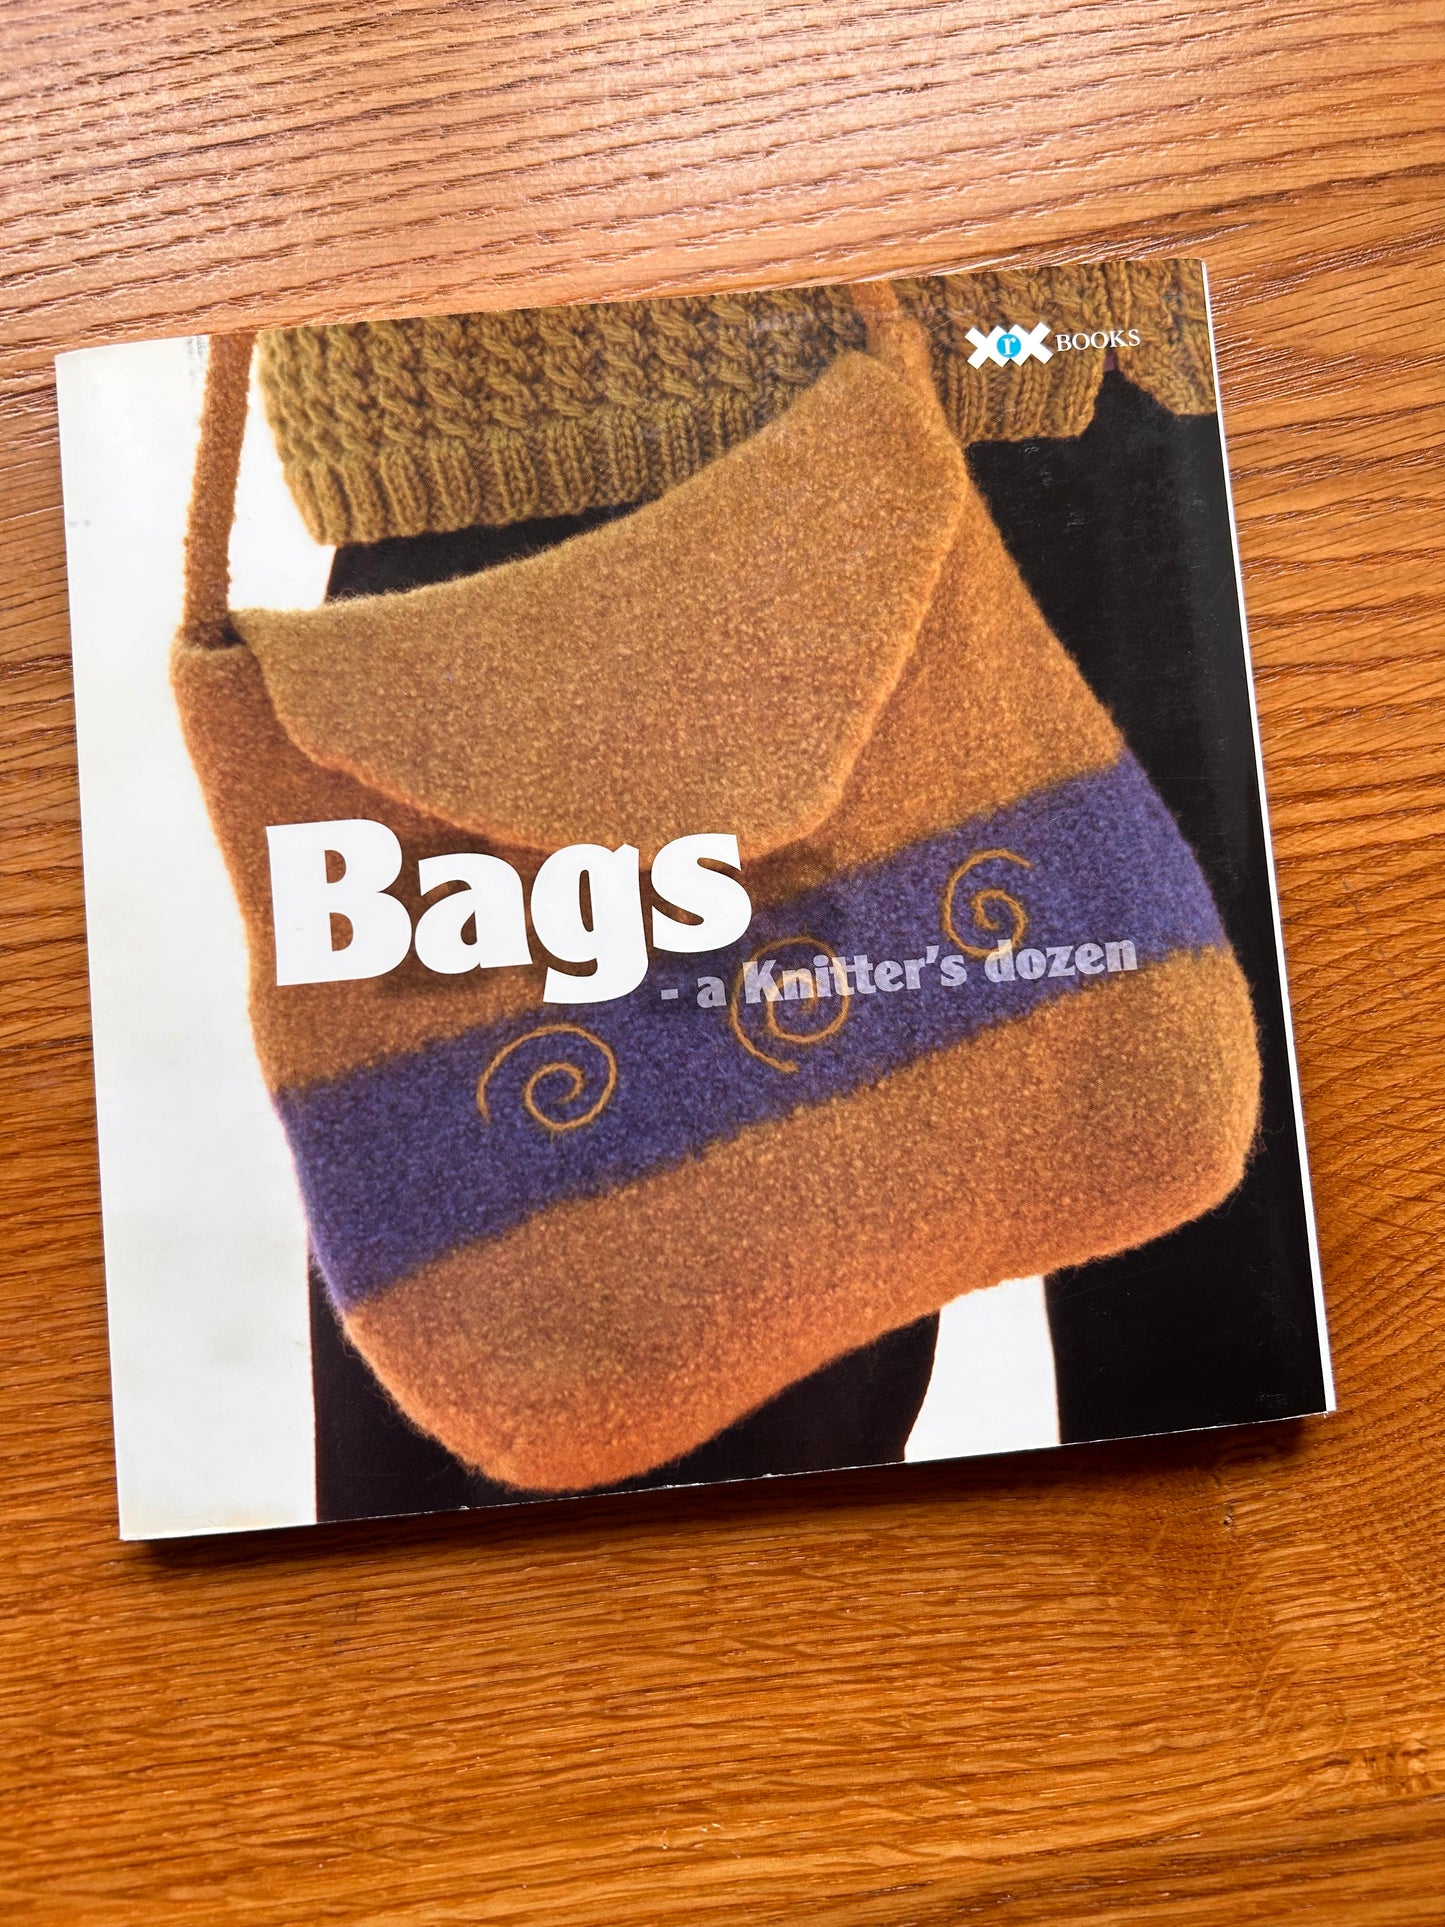 Bags - A Knitter's Dozen